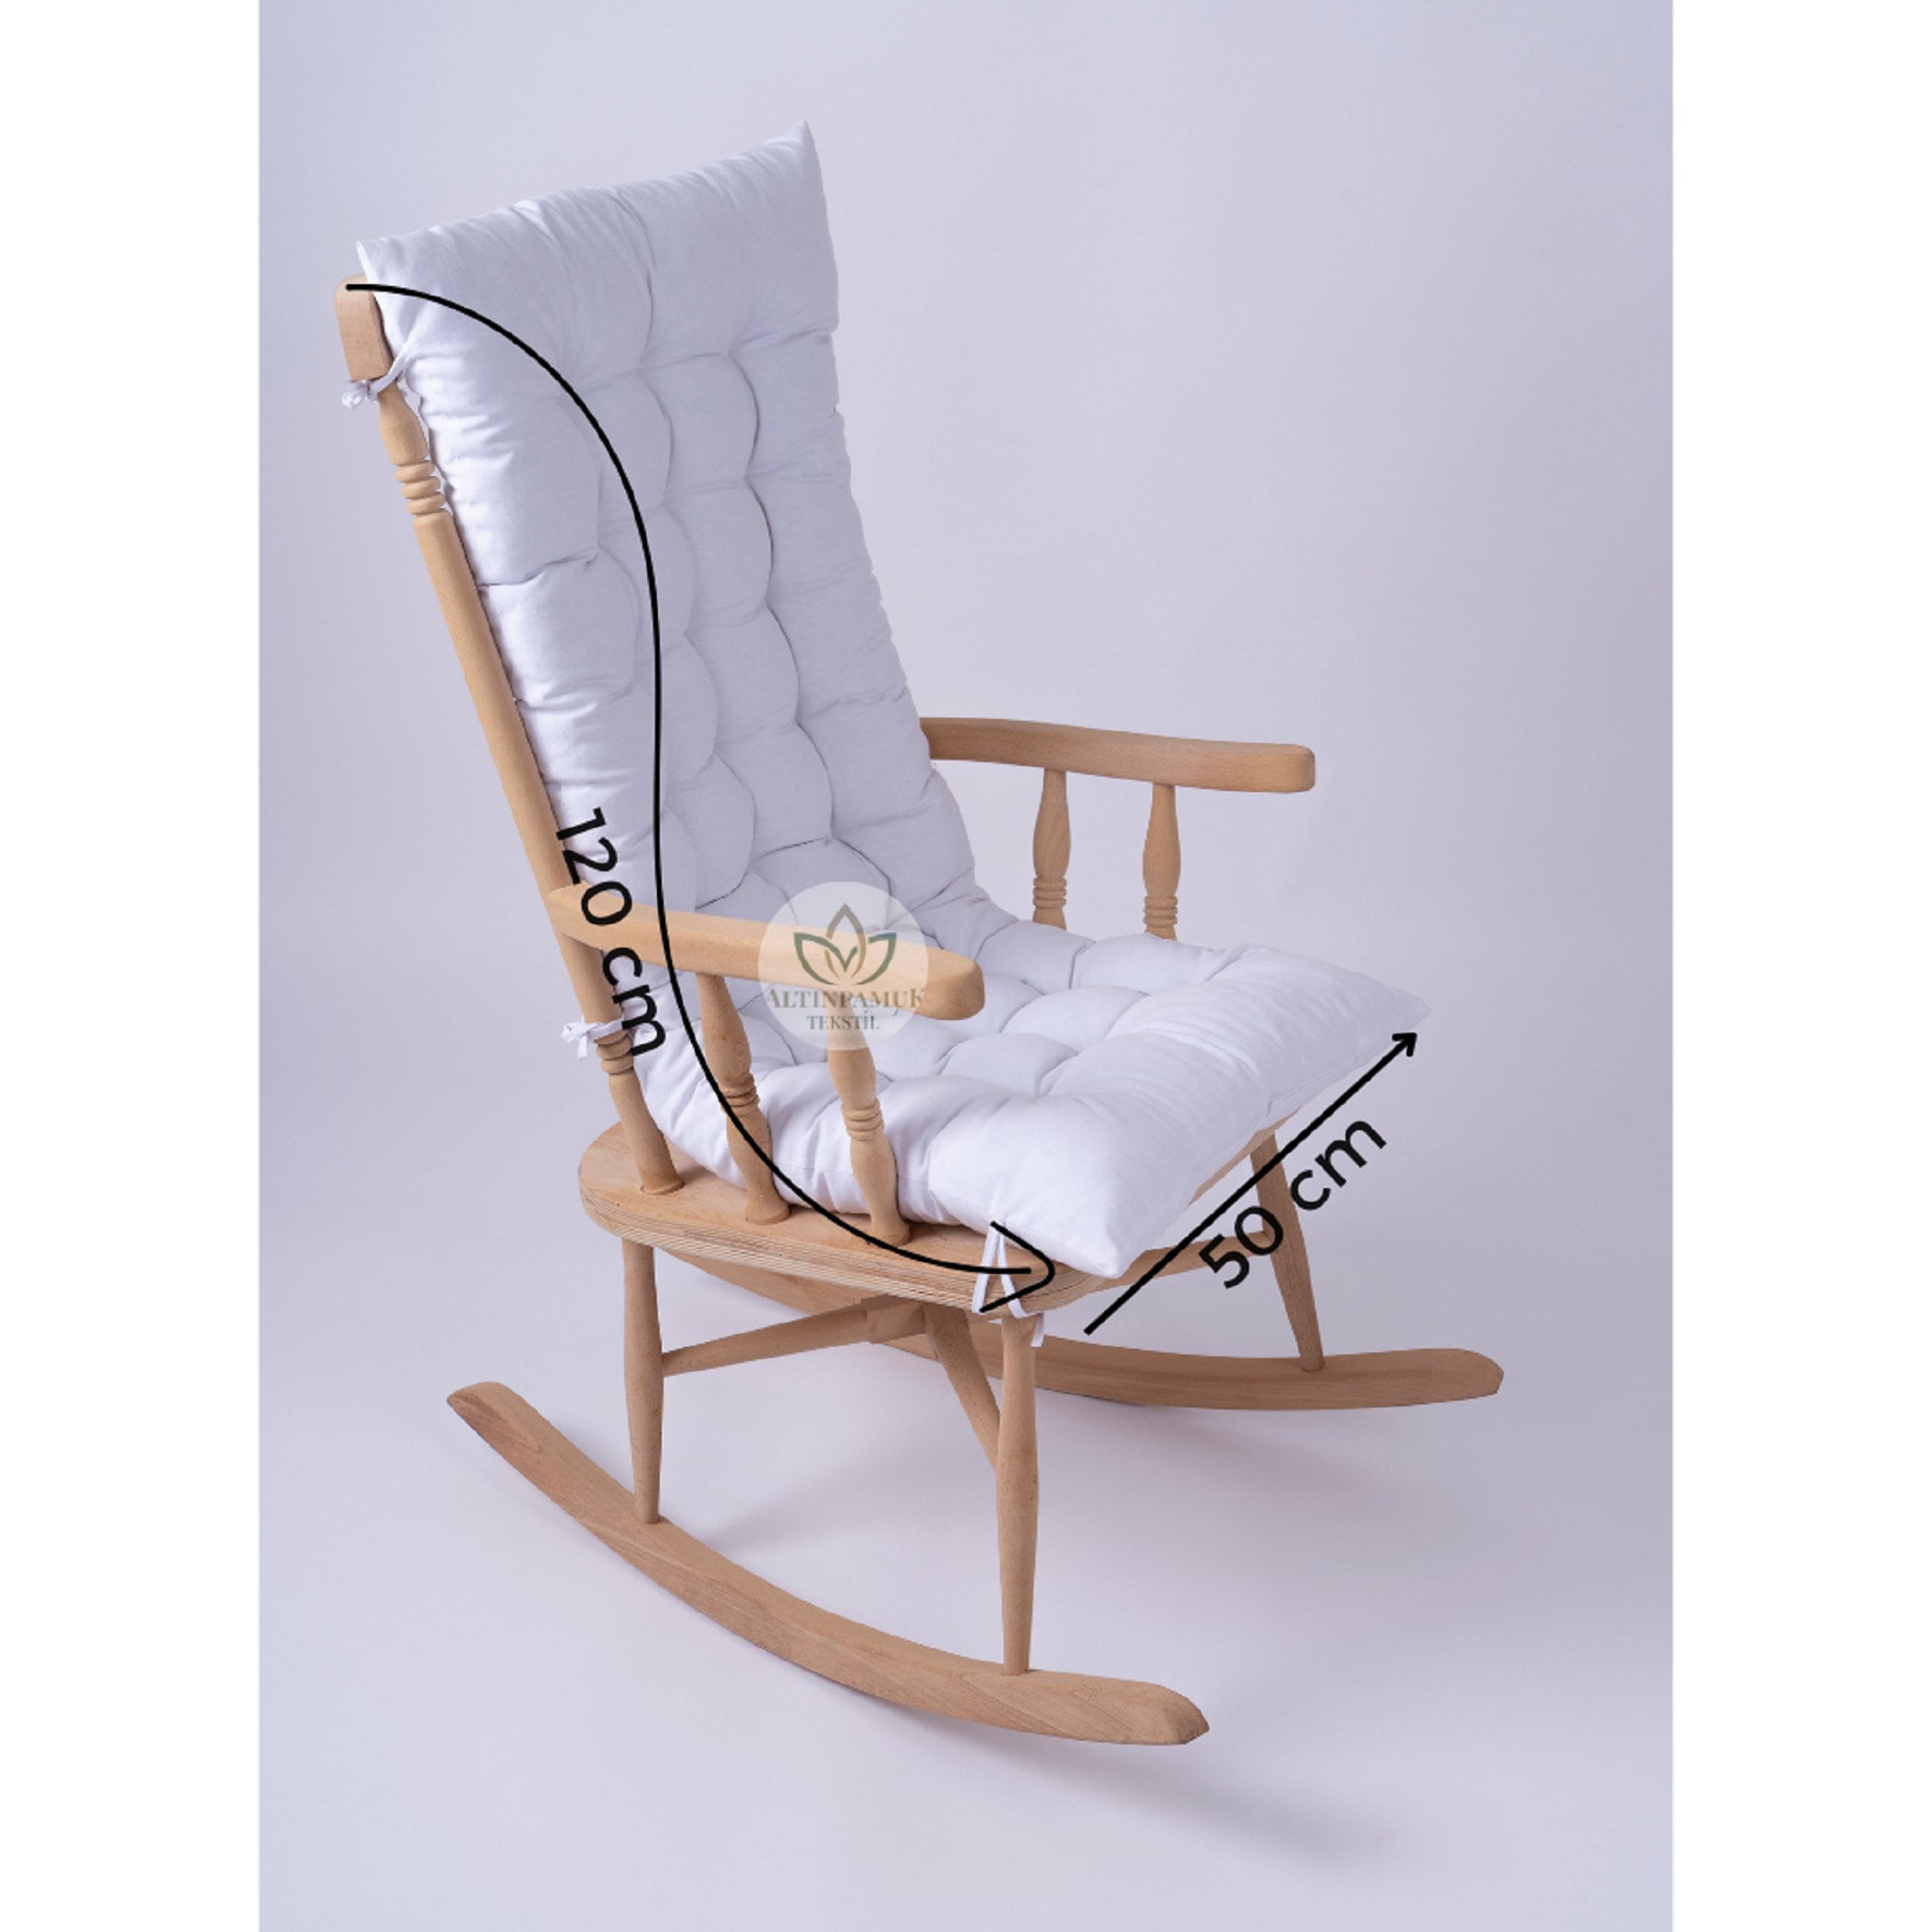 Focuprodu Rocking Chair Cushions.2 Piece Set Soft Chair Cushions